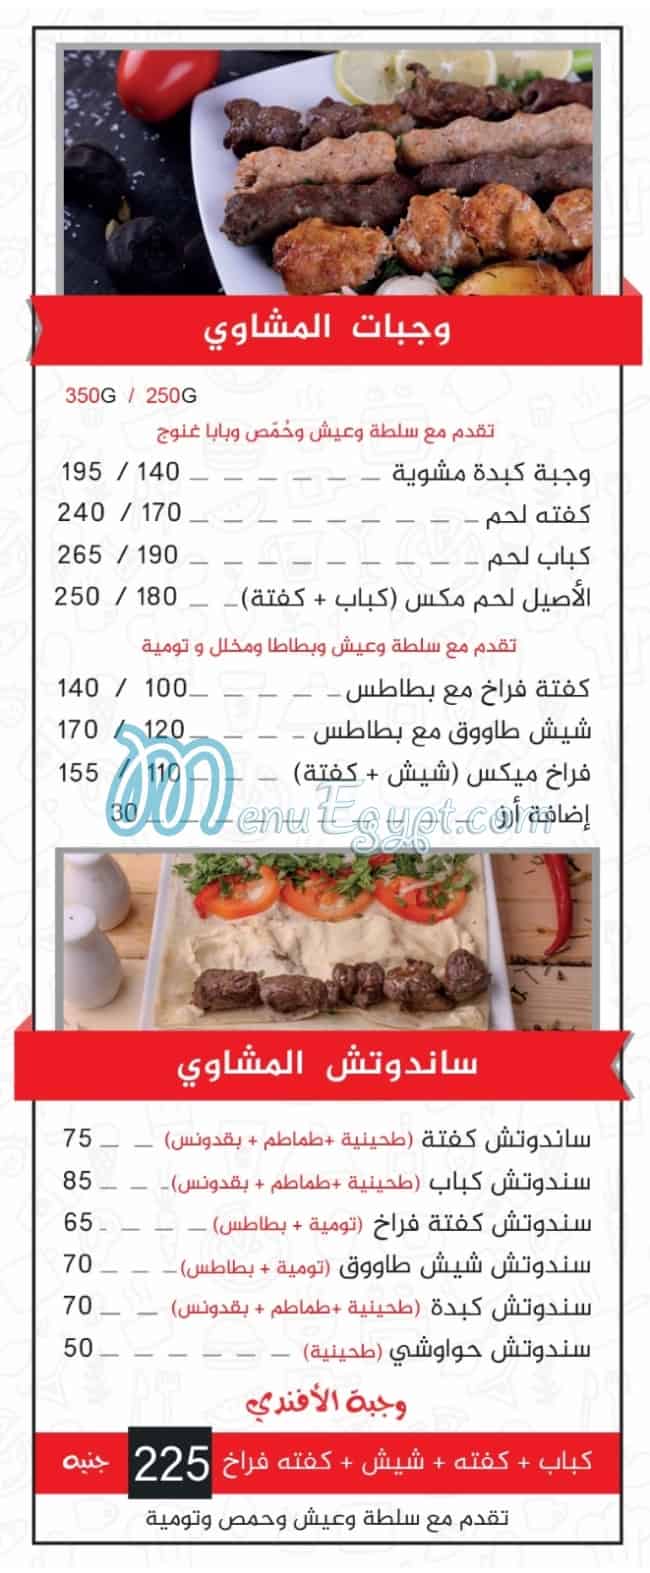 Al Aseel delivery menu